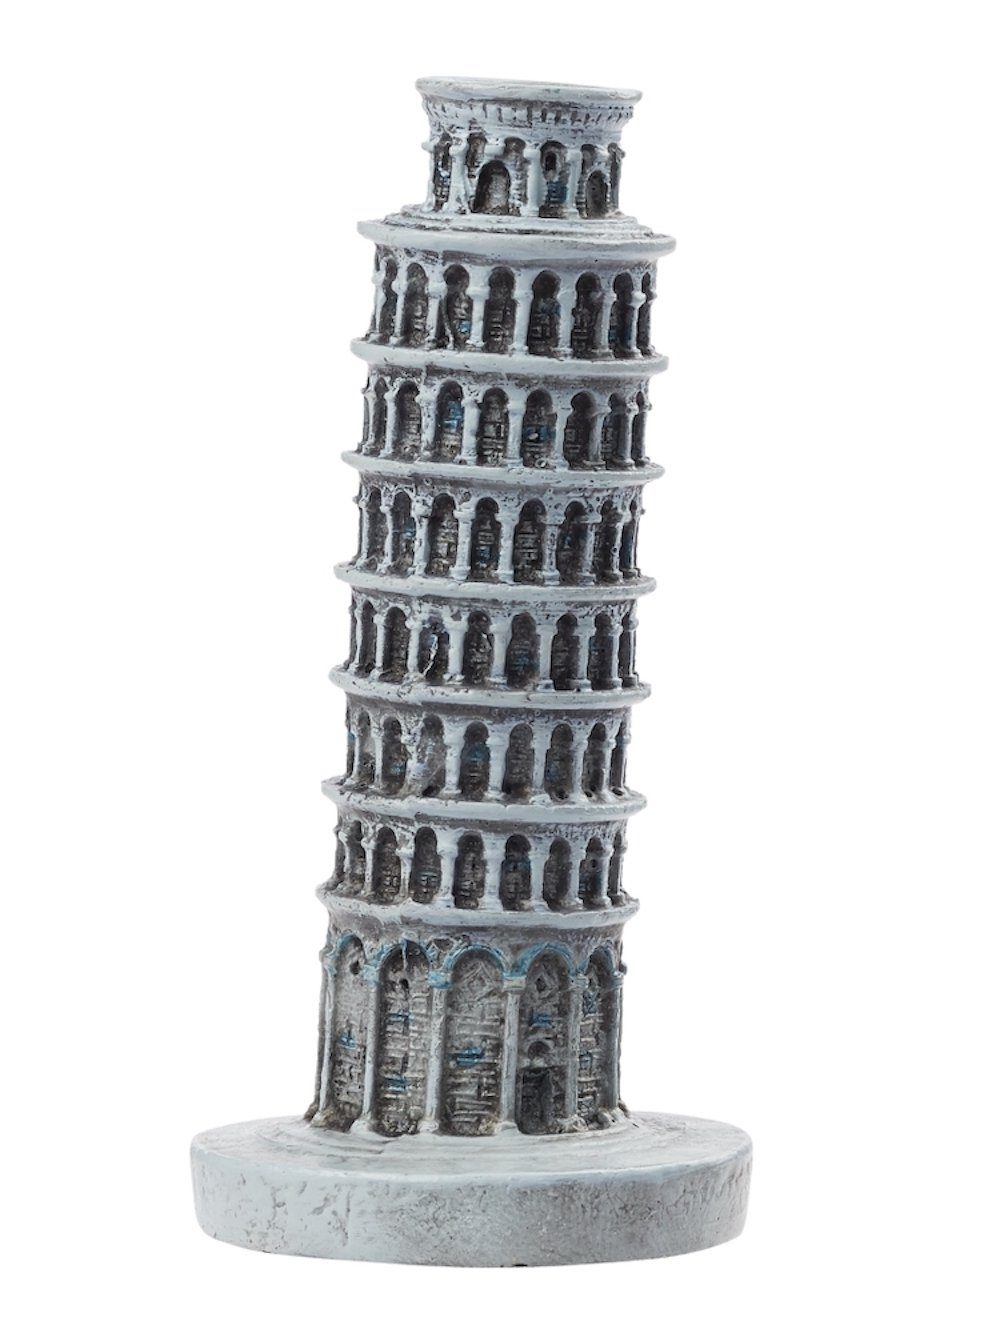 HobbyFun Dekofigur Schiefe Turm 'Pisa', 3,5 x 7,3 cm